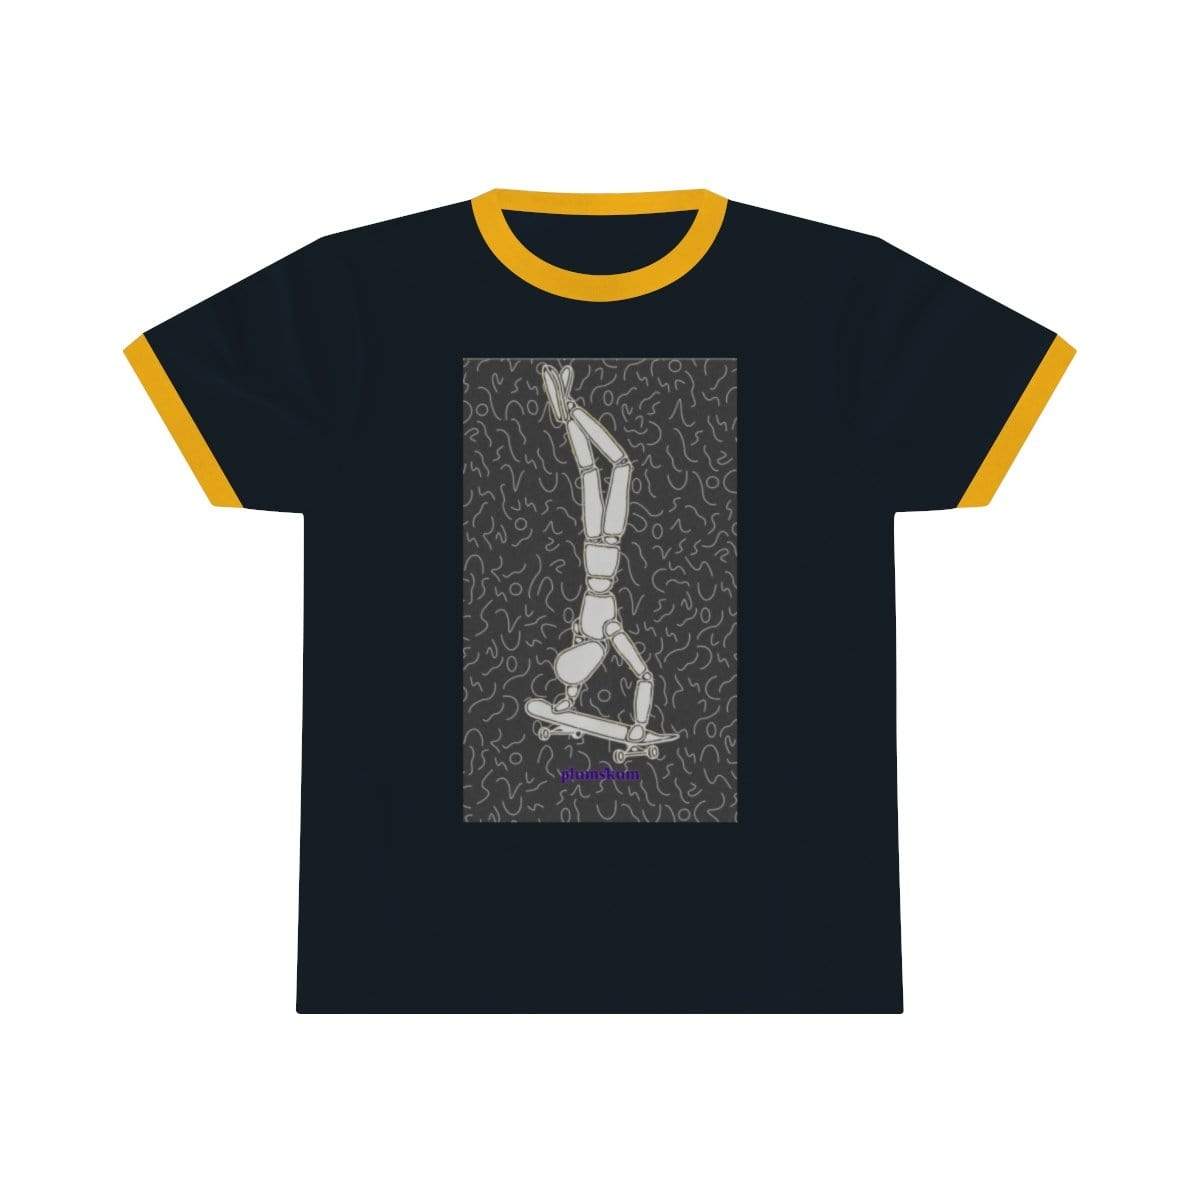 Printify T-Shirt S / Navy / Gold Plumskum Skater Unisex Ringer Tee